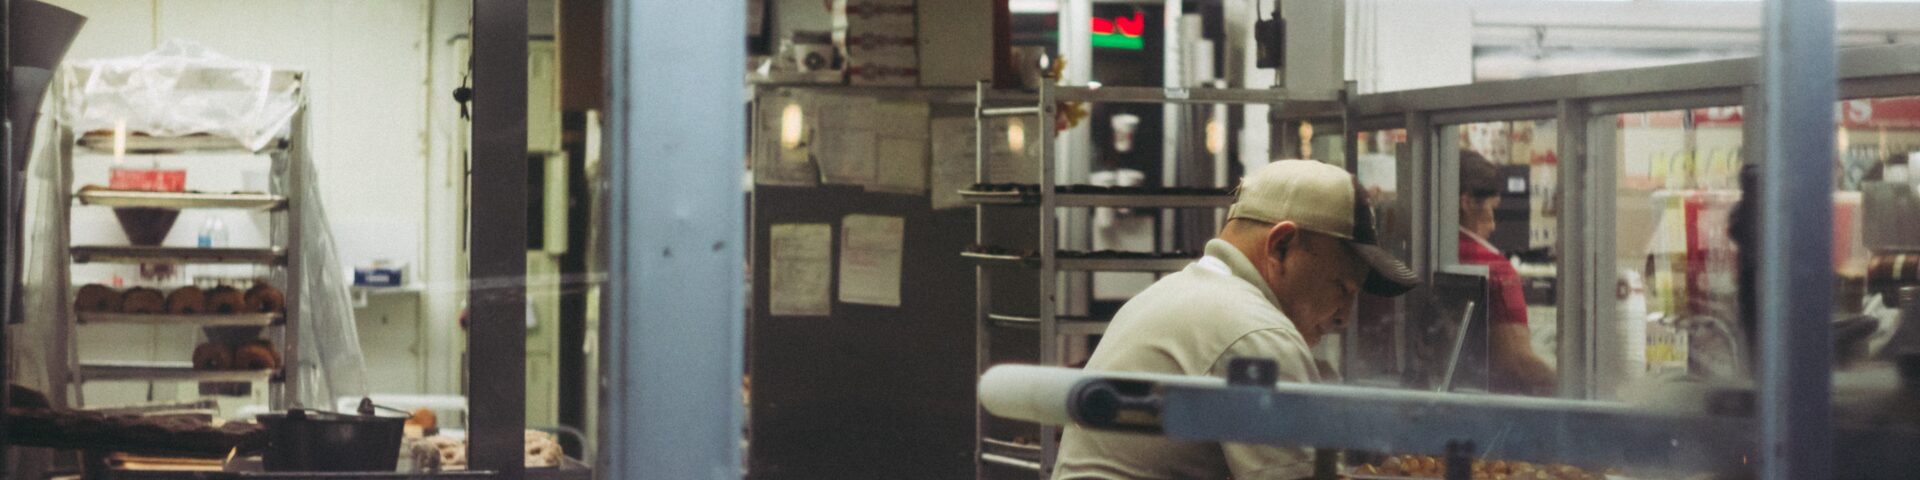 man werkt in bakkerij met deeg op een tafel, afbeelding bij blog over pensioen uitkeren terwijl je werkt